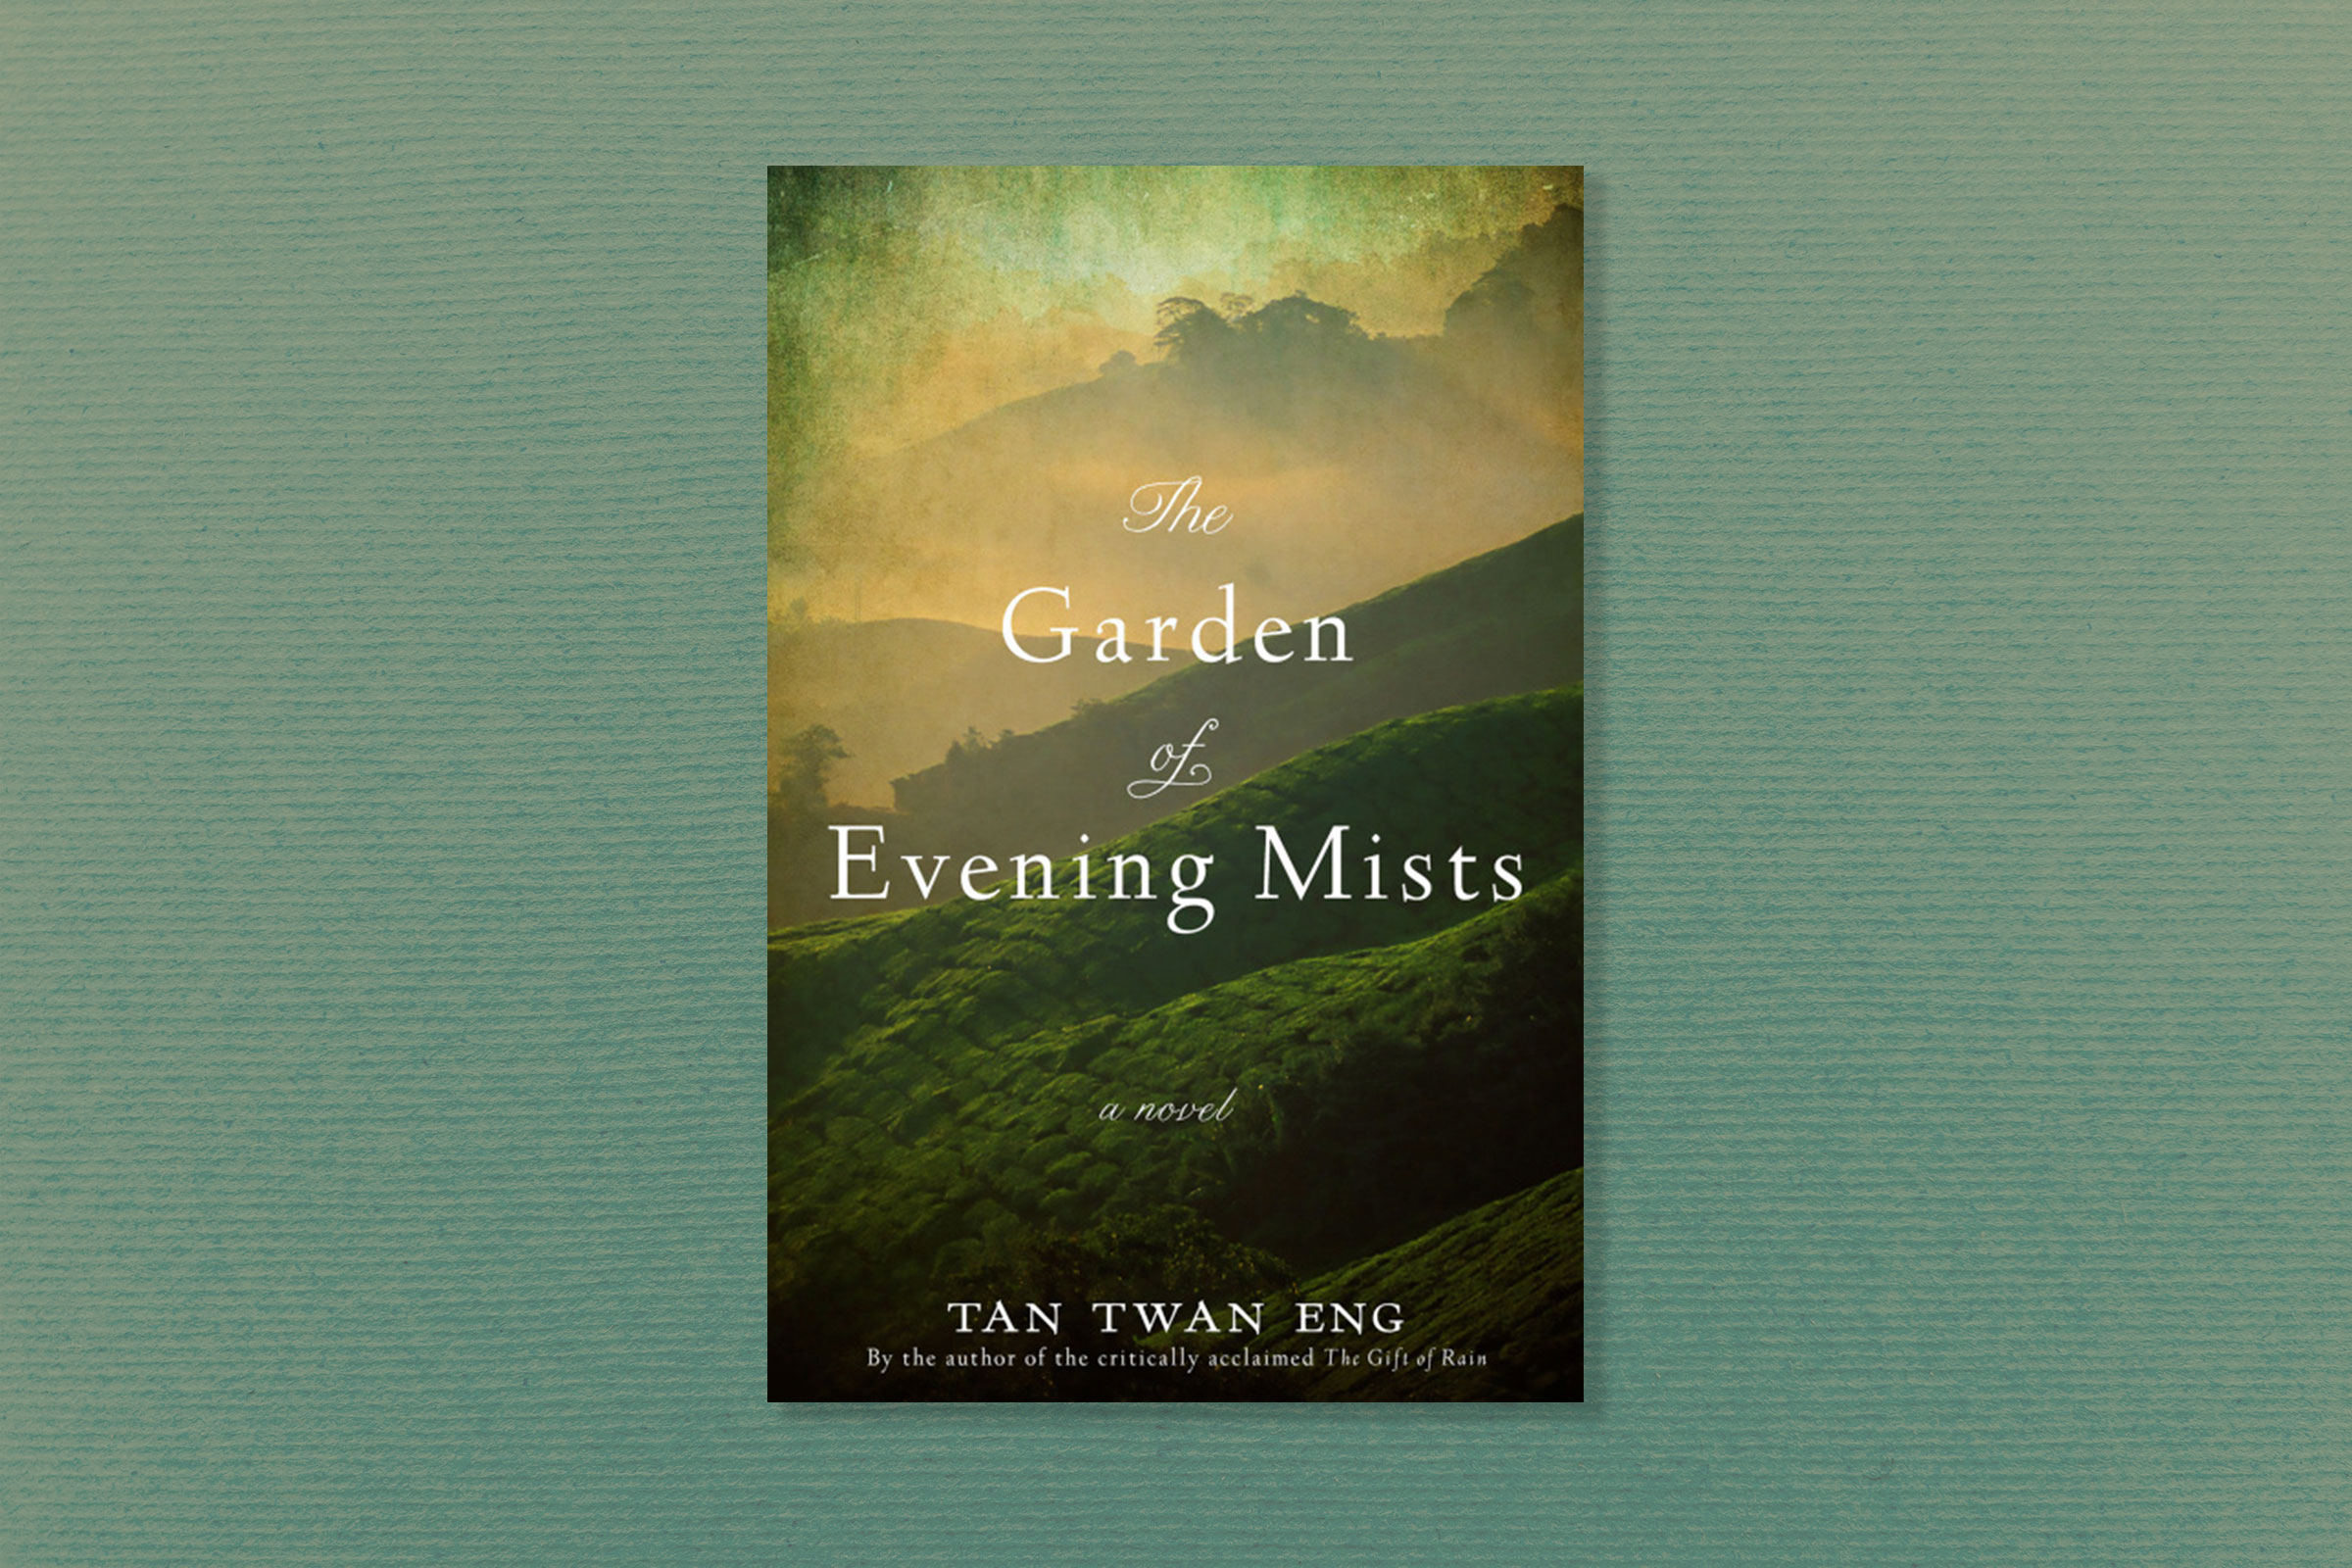 The Garden of Evening Mists, by Tan Twan Eng